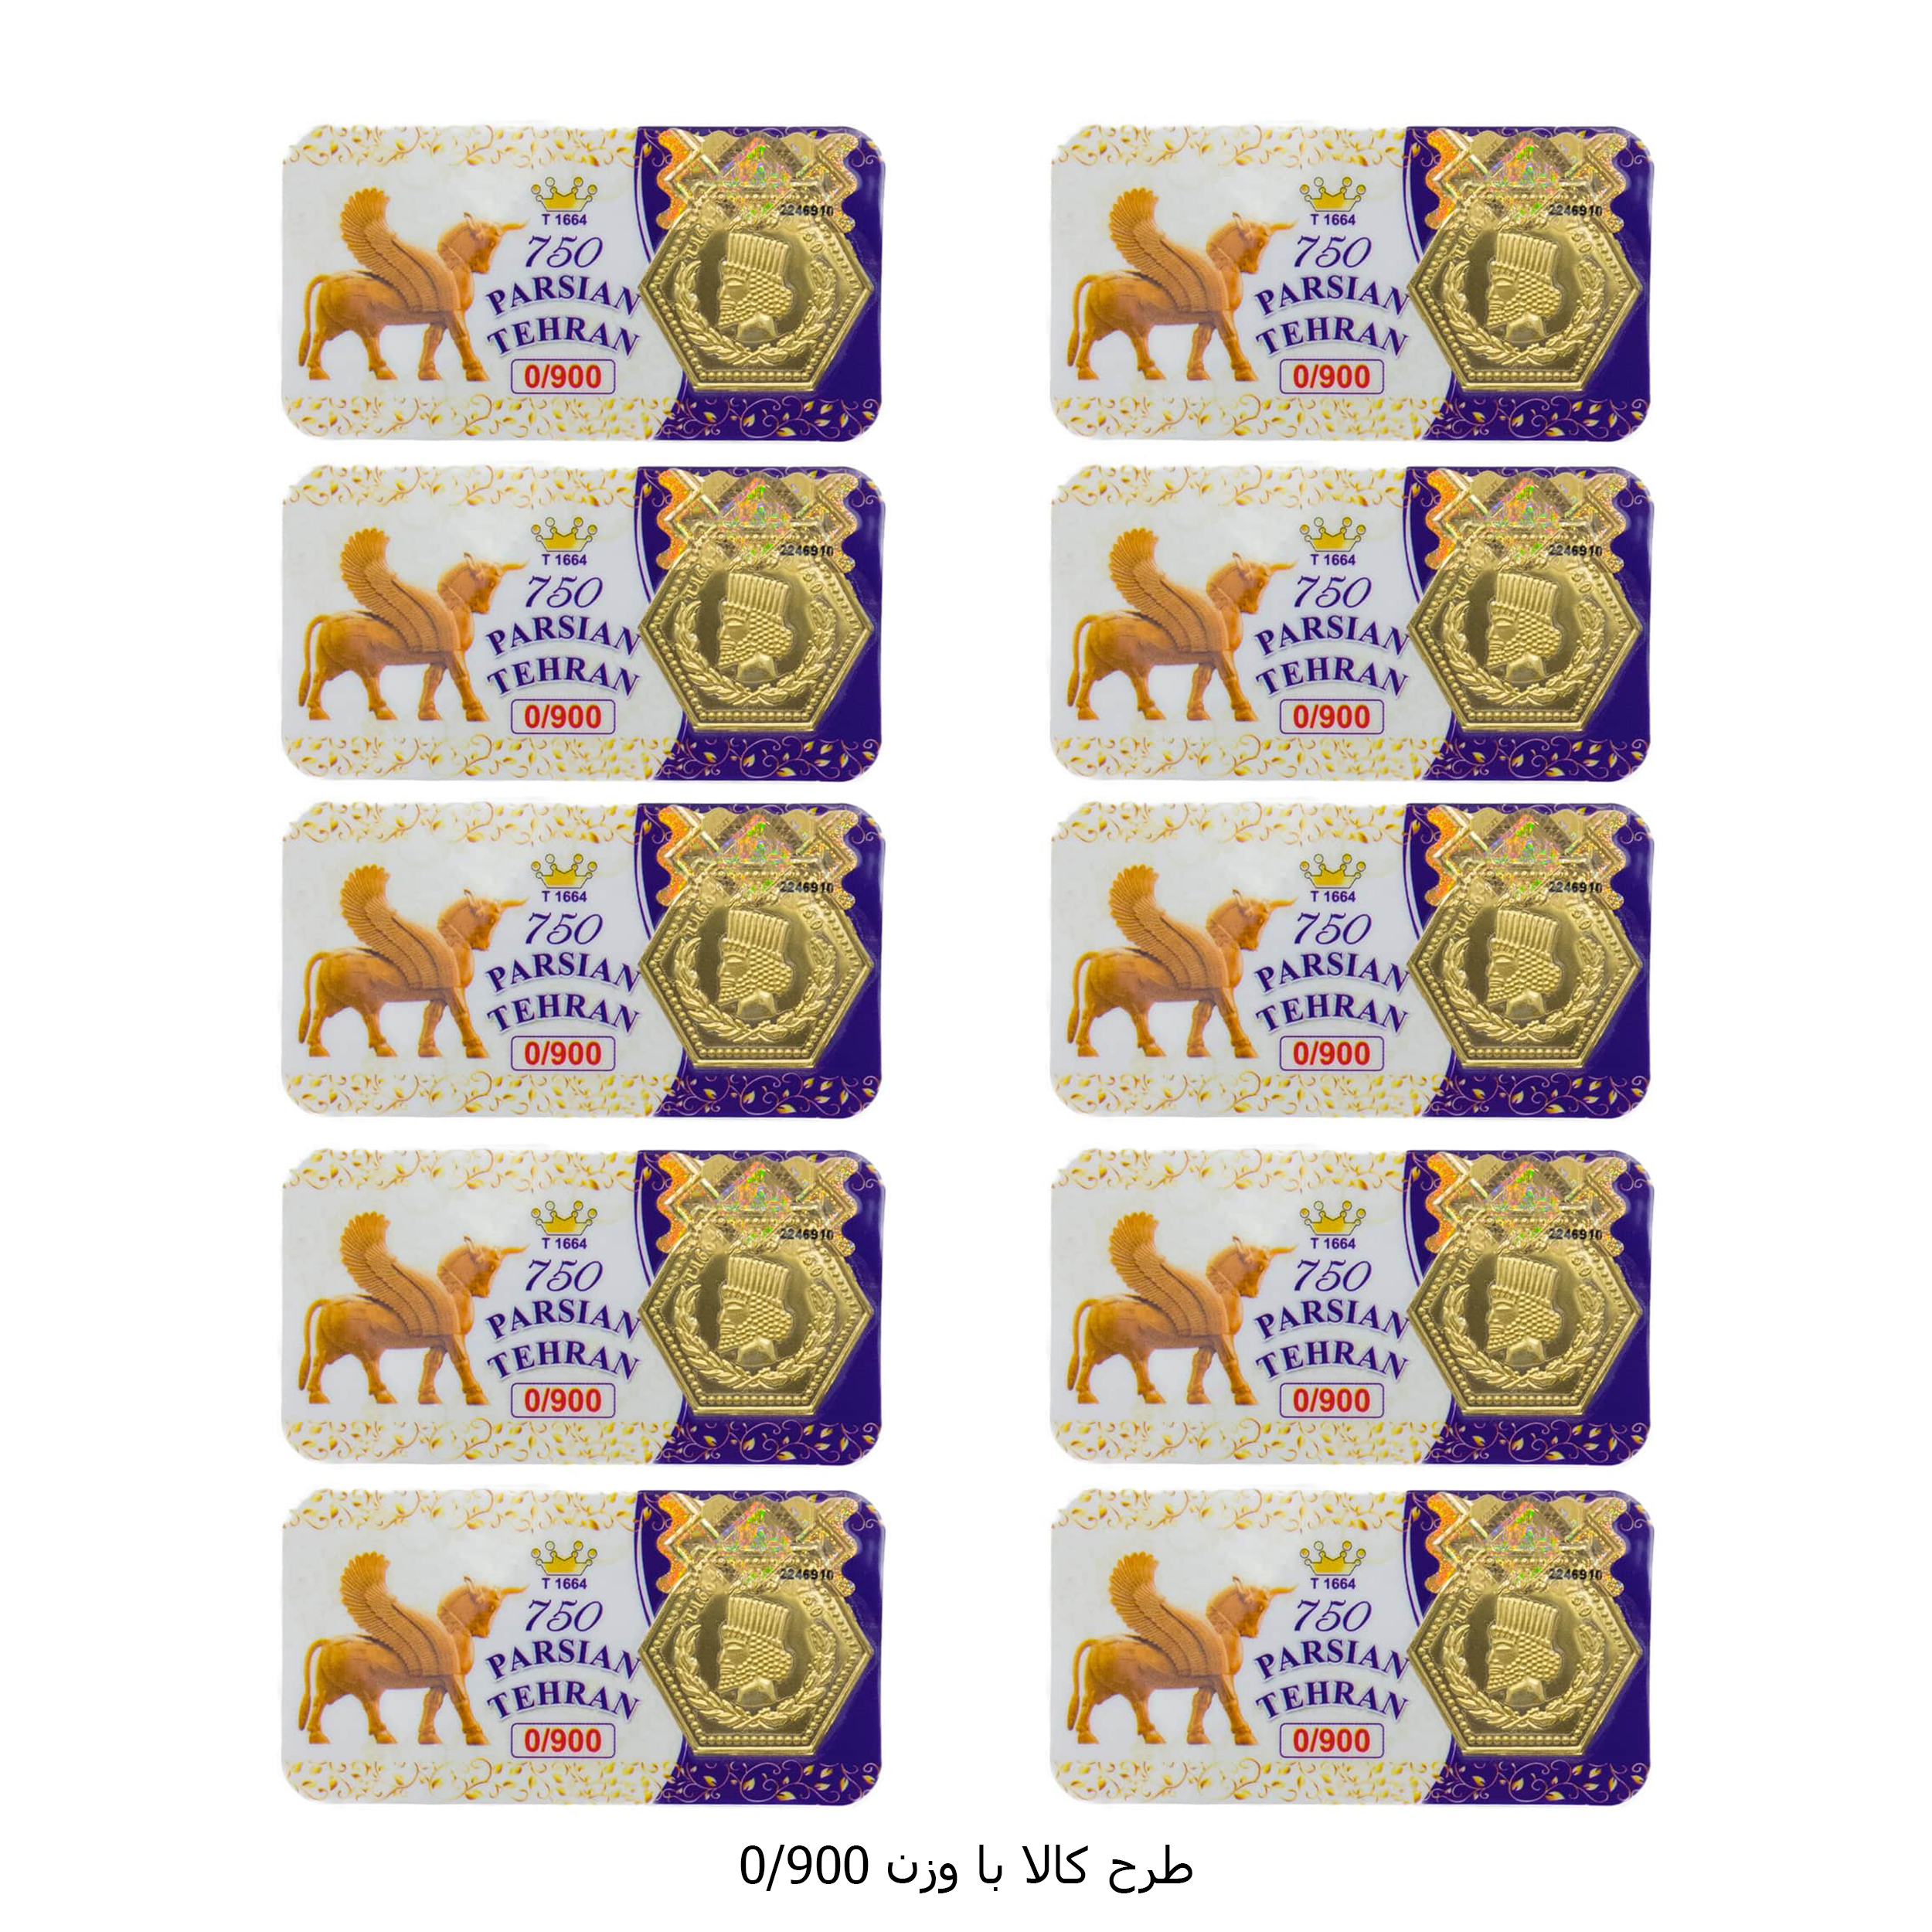 سکه گرمی طلا 18 عیار پارسیان تهران مدل K412 مجموعه 10 عددی -  - 16